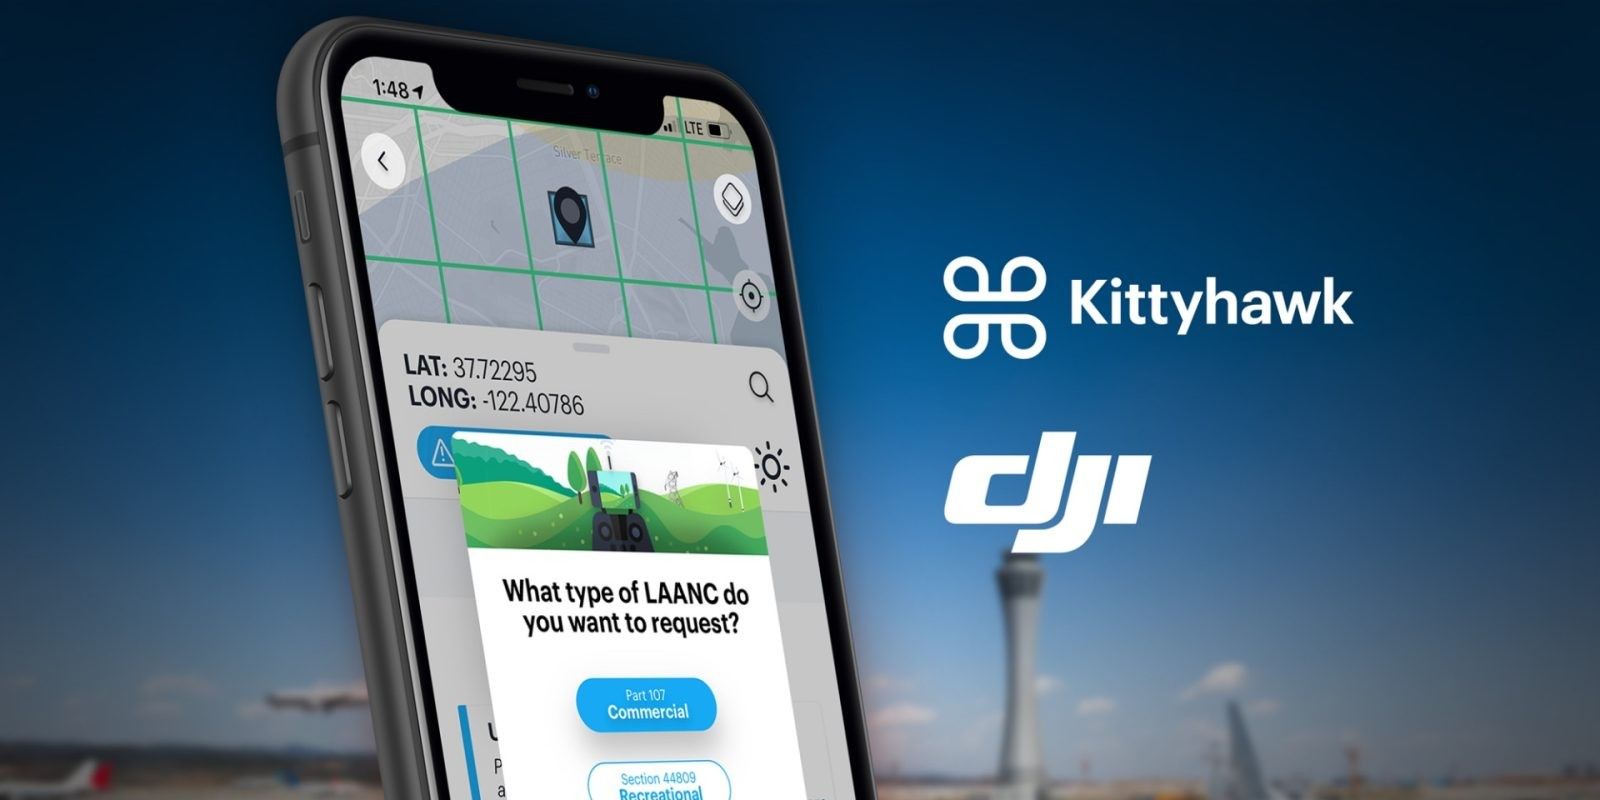 DJI Recommends Kittyhawk app for LAANC Service